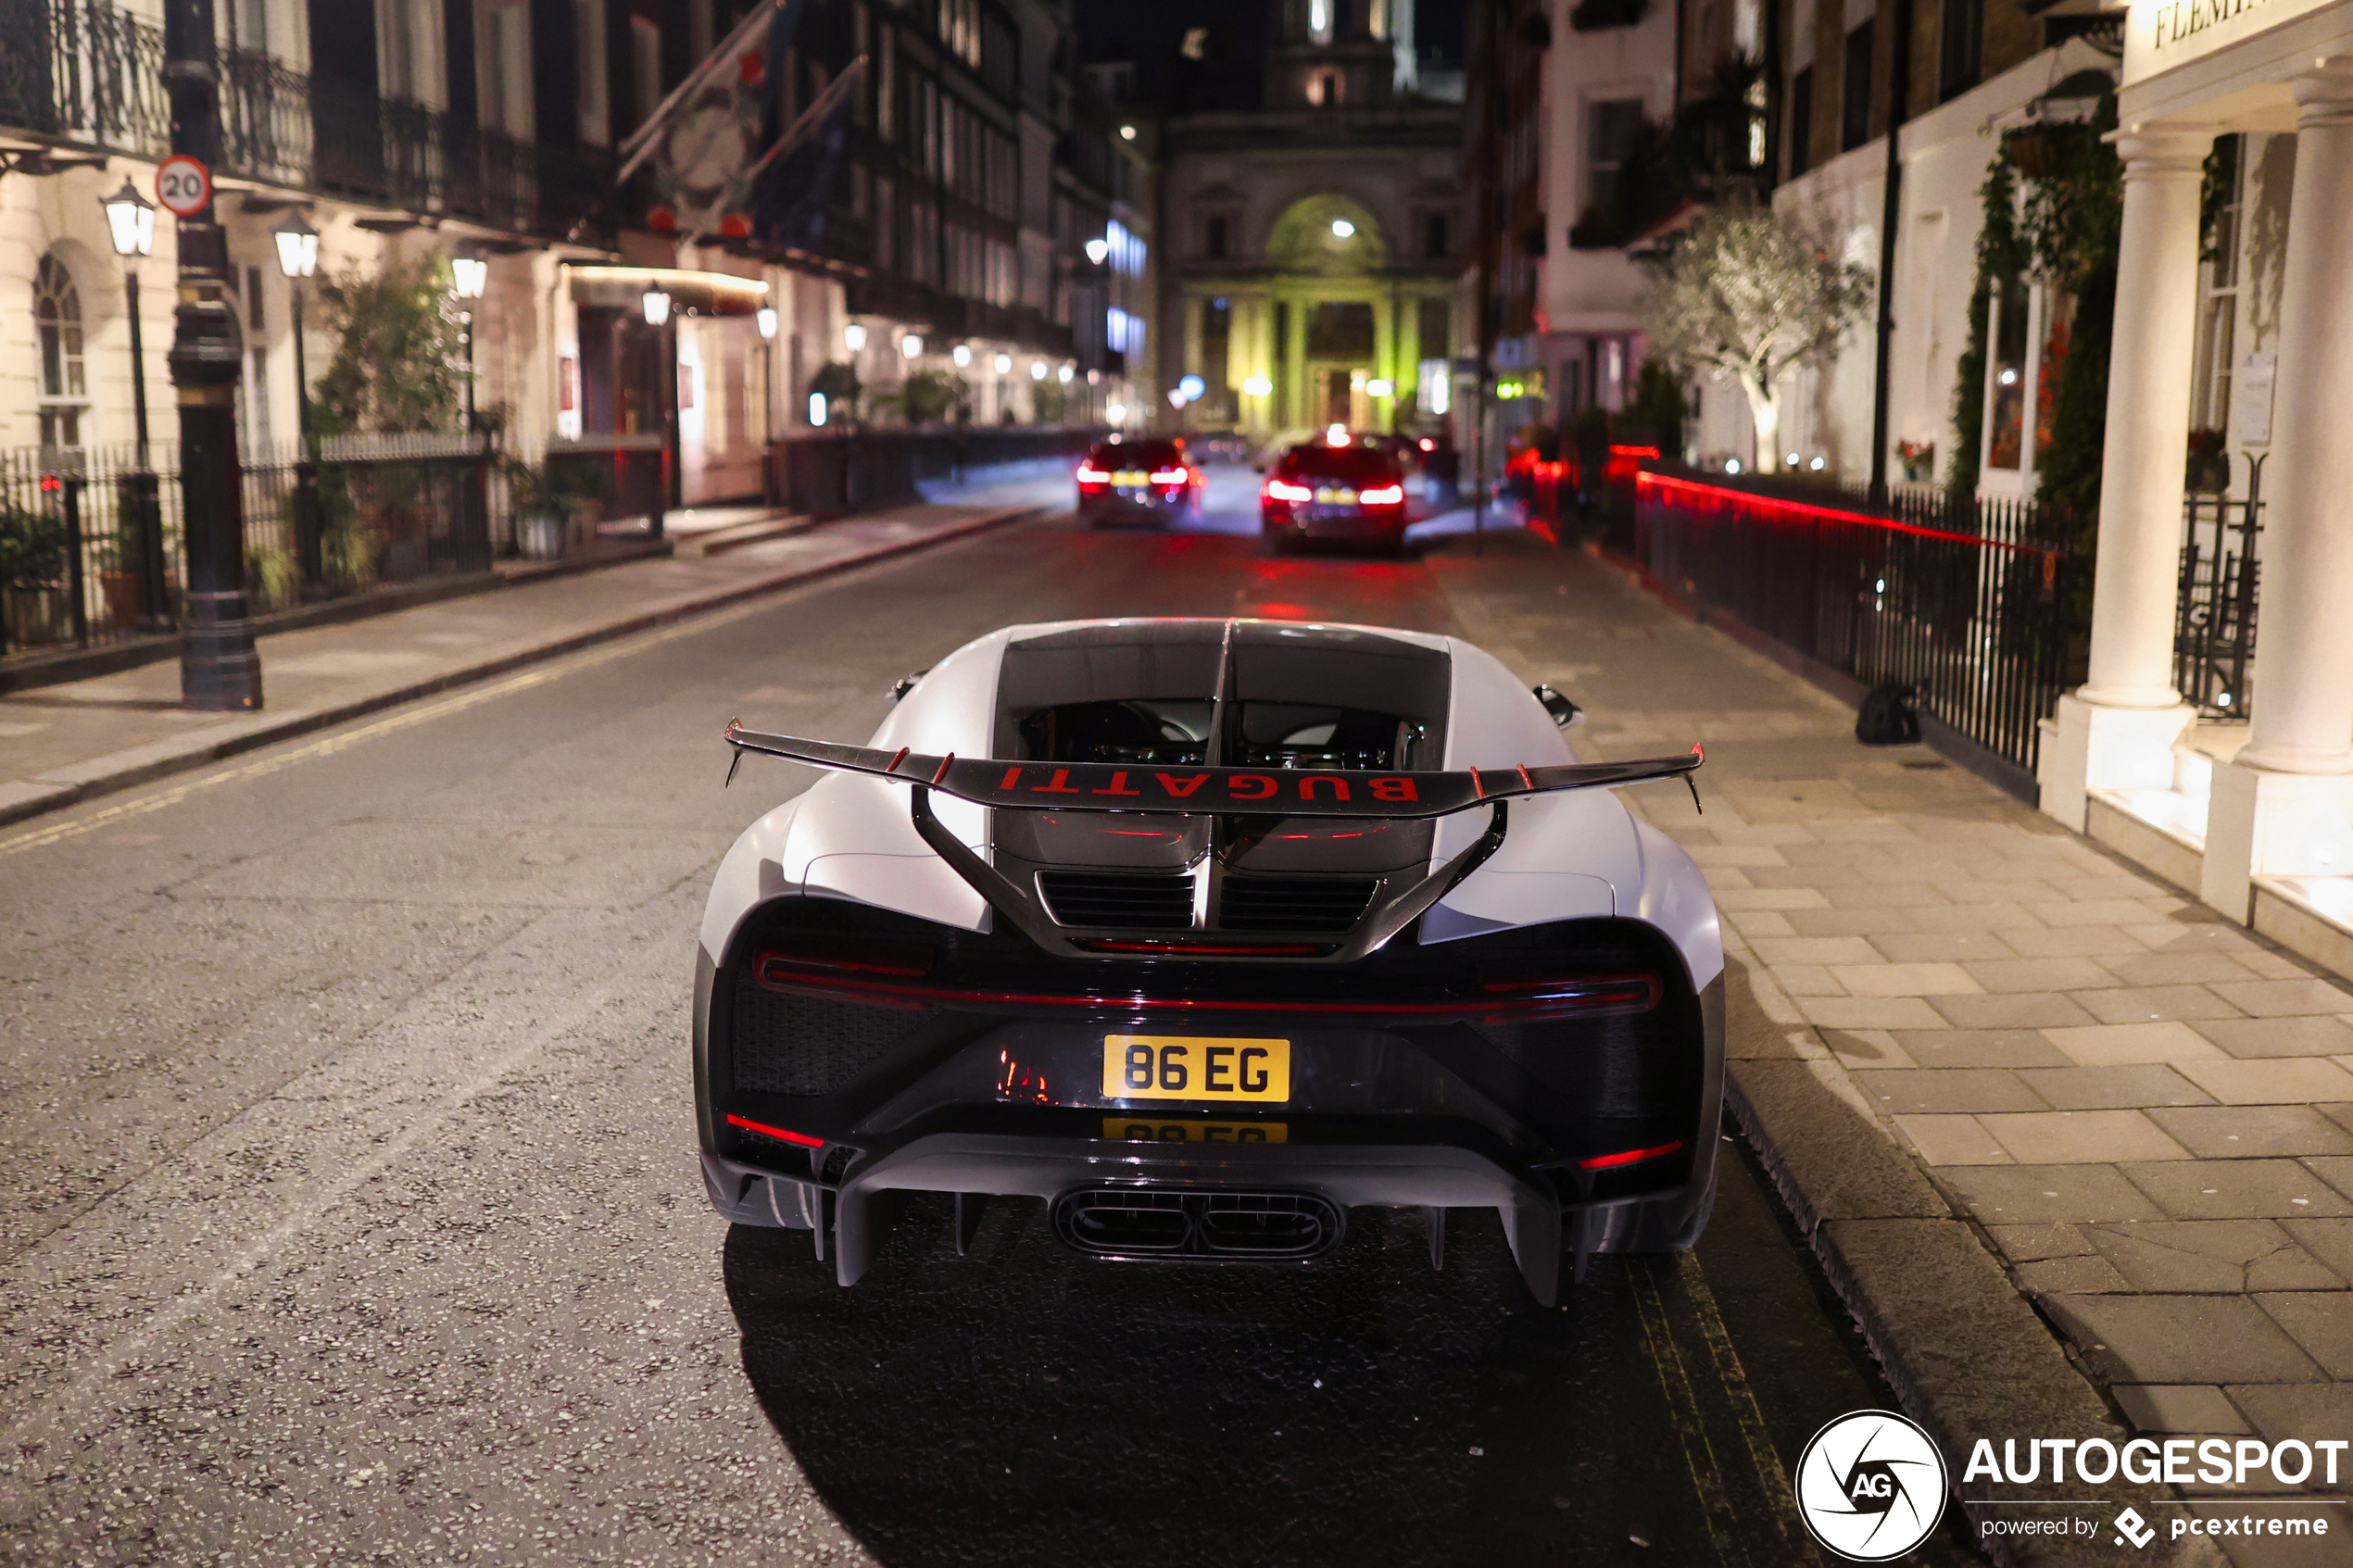 Nachtelijk Londen verwend spotter met Bugatti Chiron Pur Sport